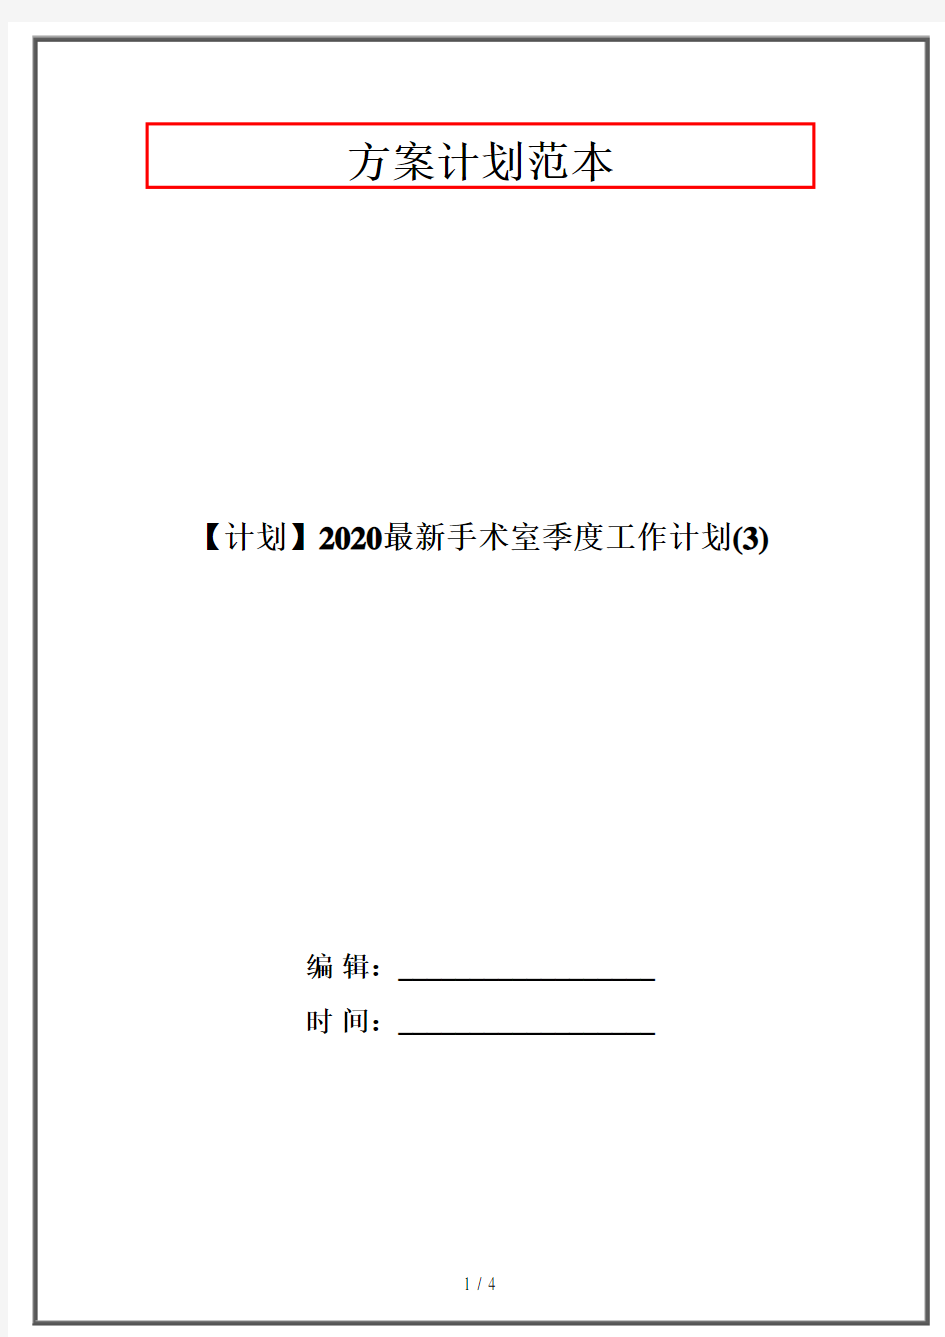 【计划】2020最新手术室季度工作计划(3)